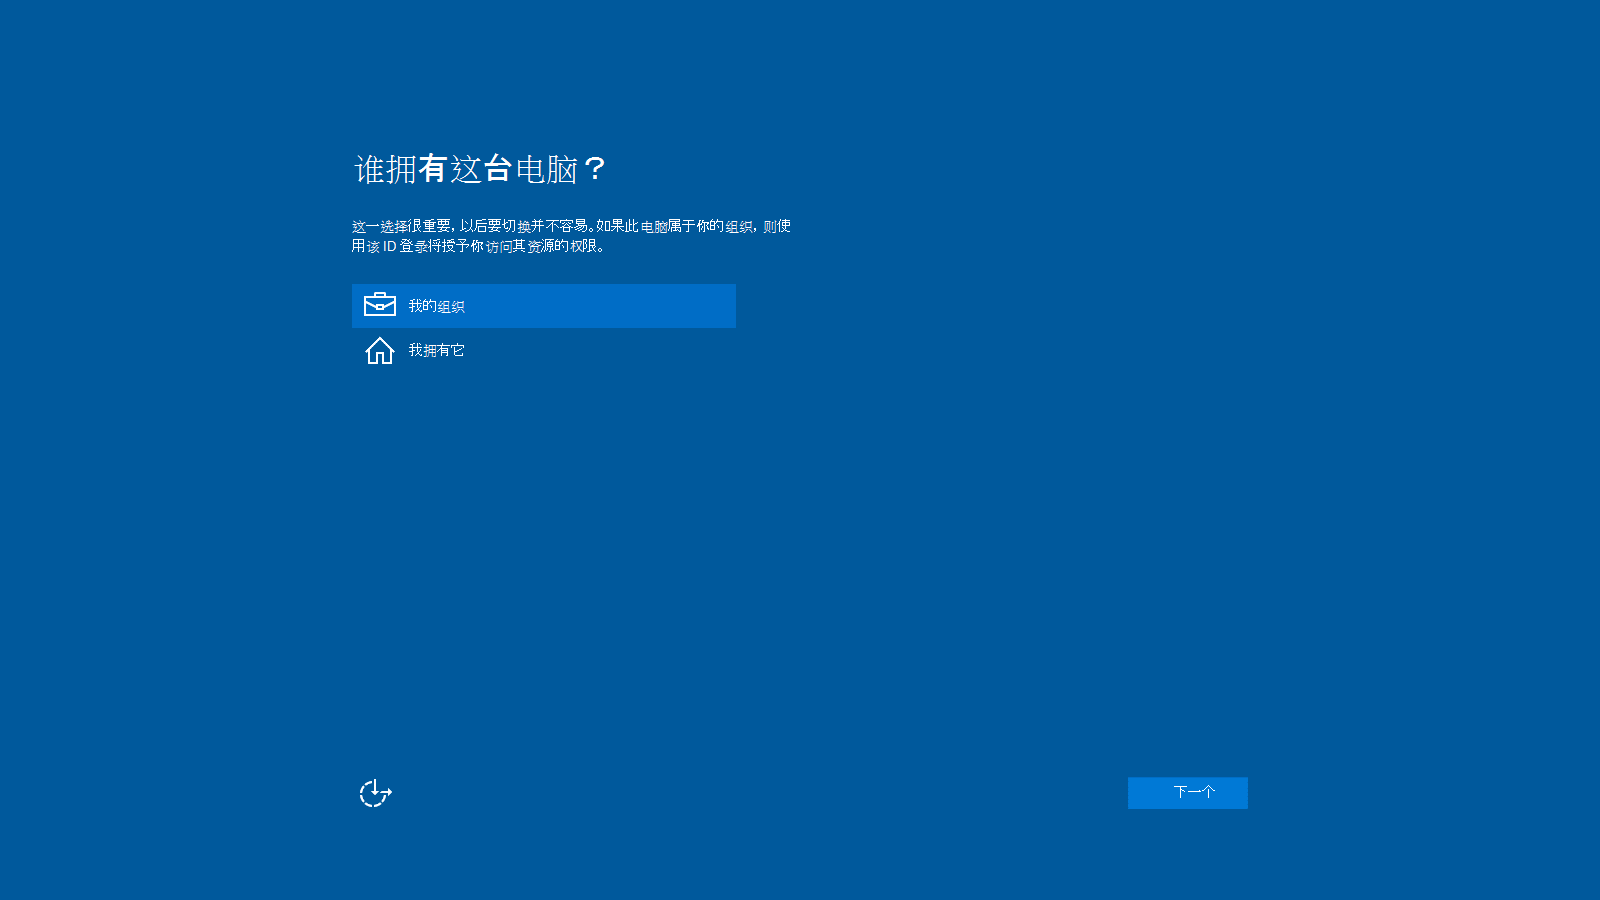 Windows 10安装程序中“谁拥有此电脑？”页的屏幕截图。